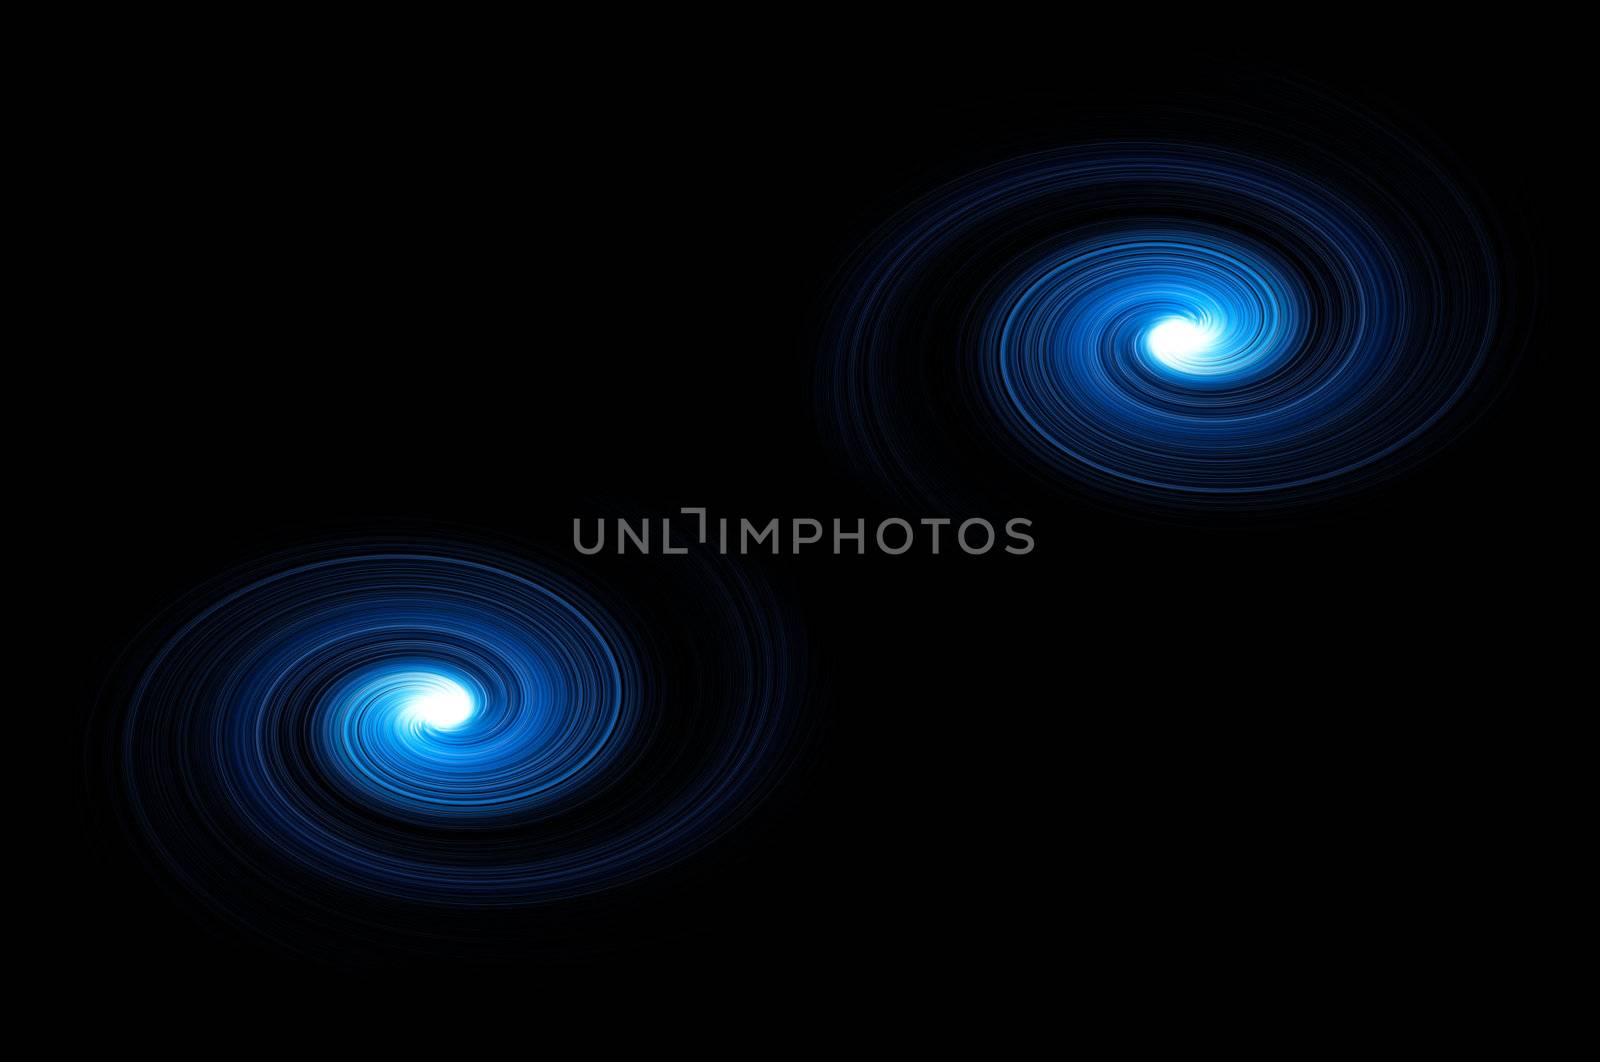 Celestial blue swirls by 72soul